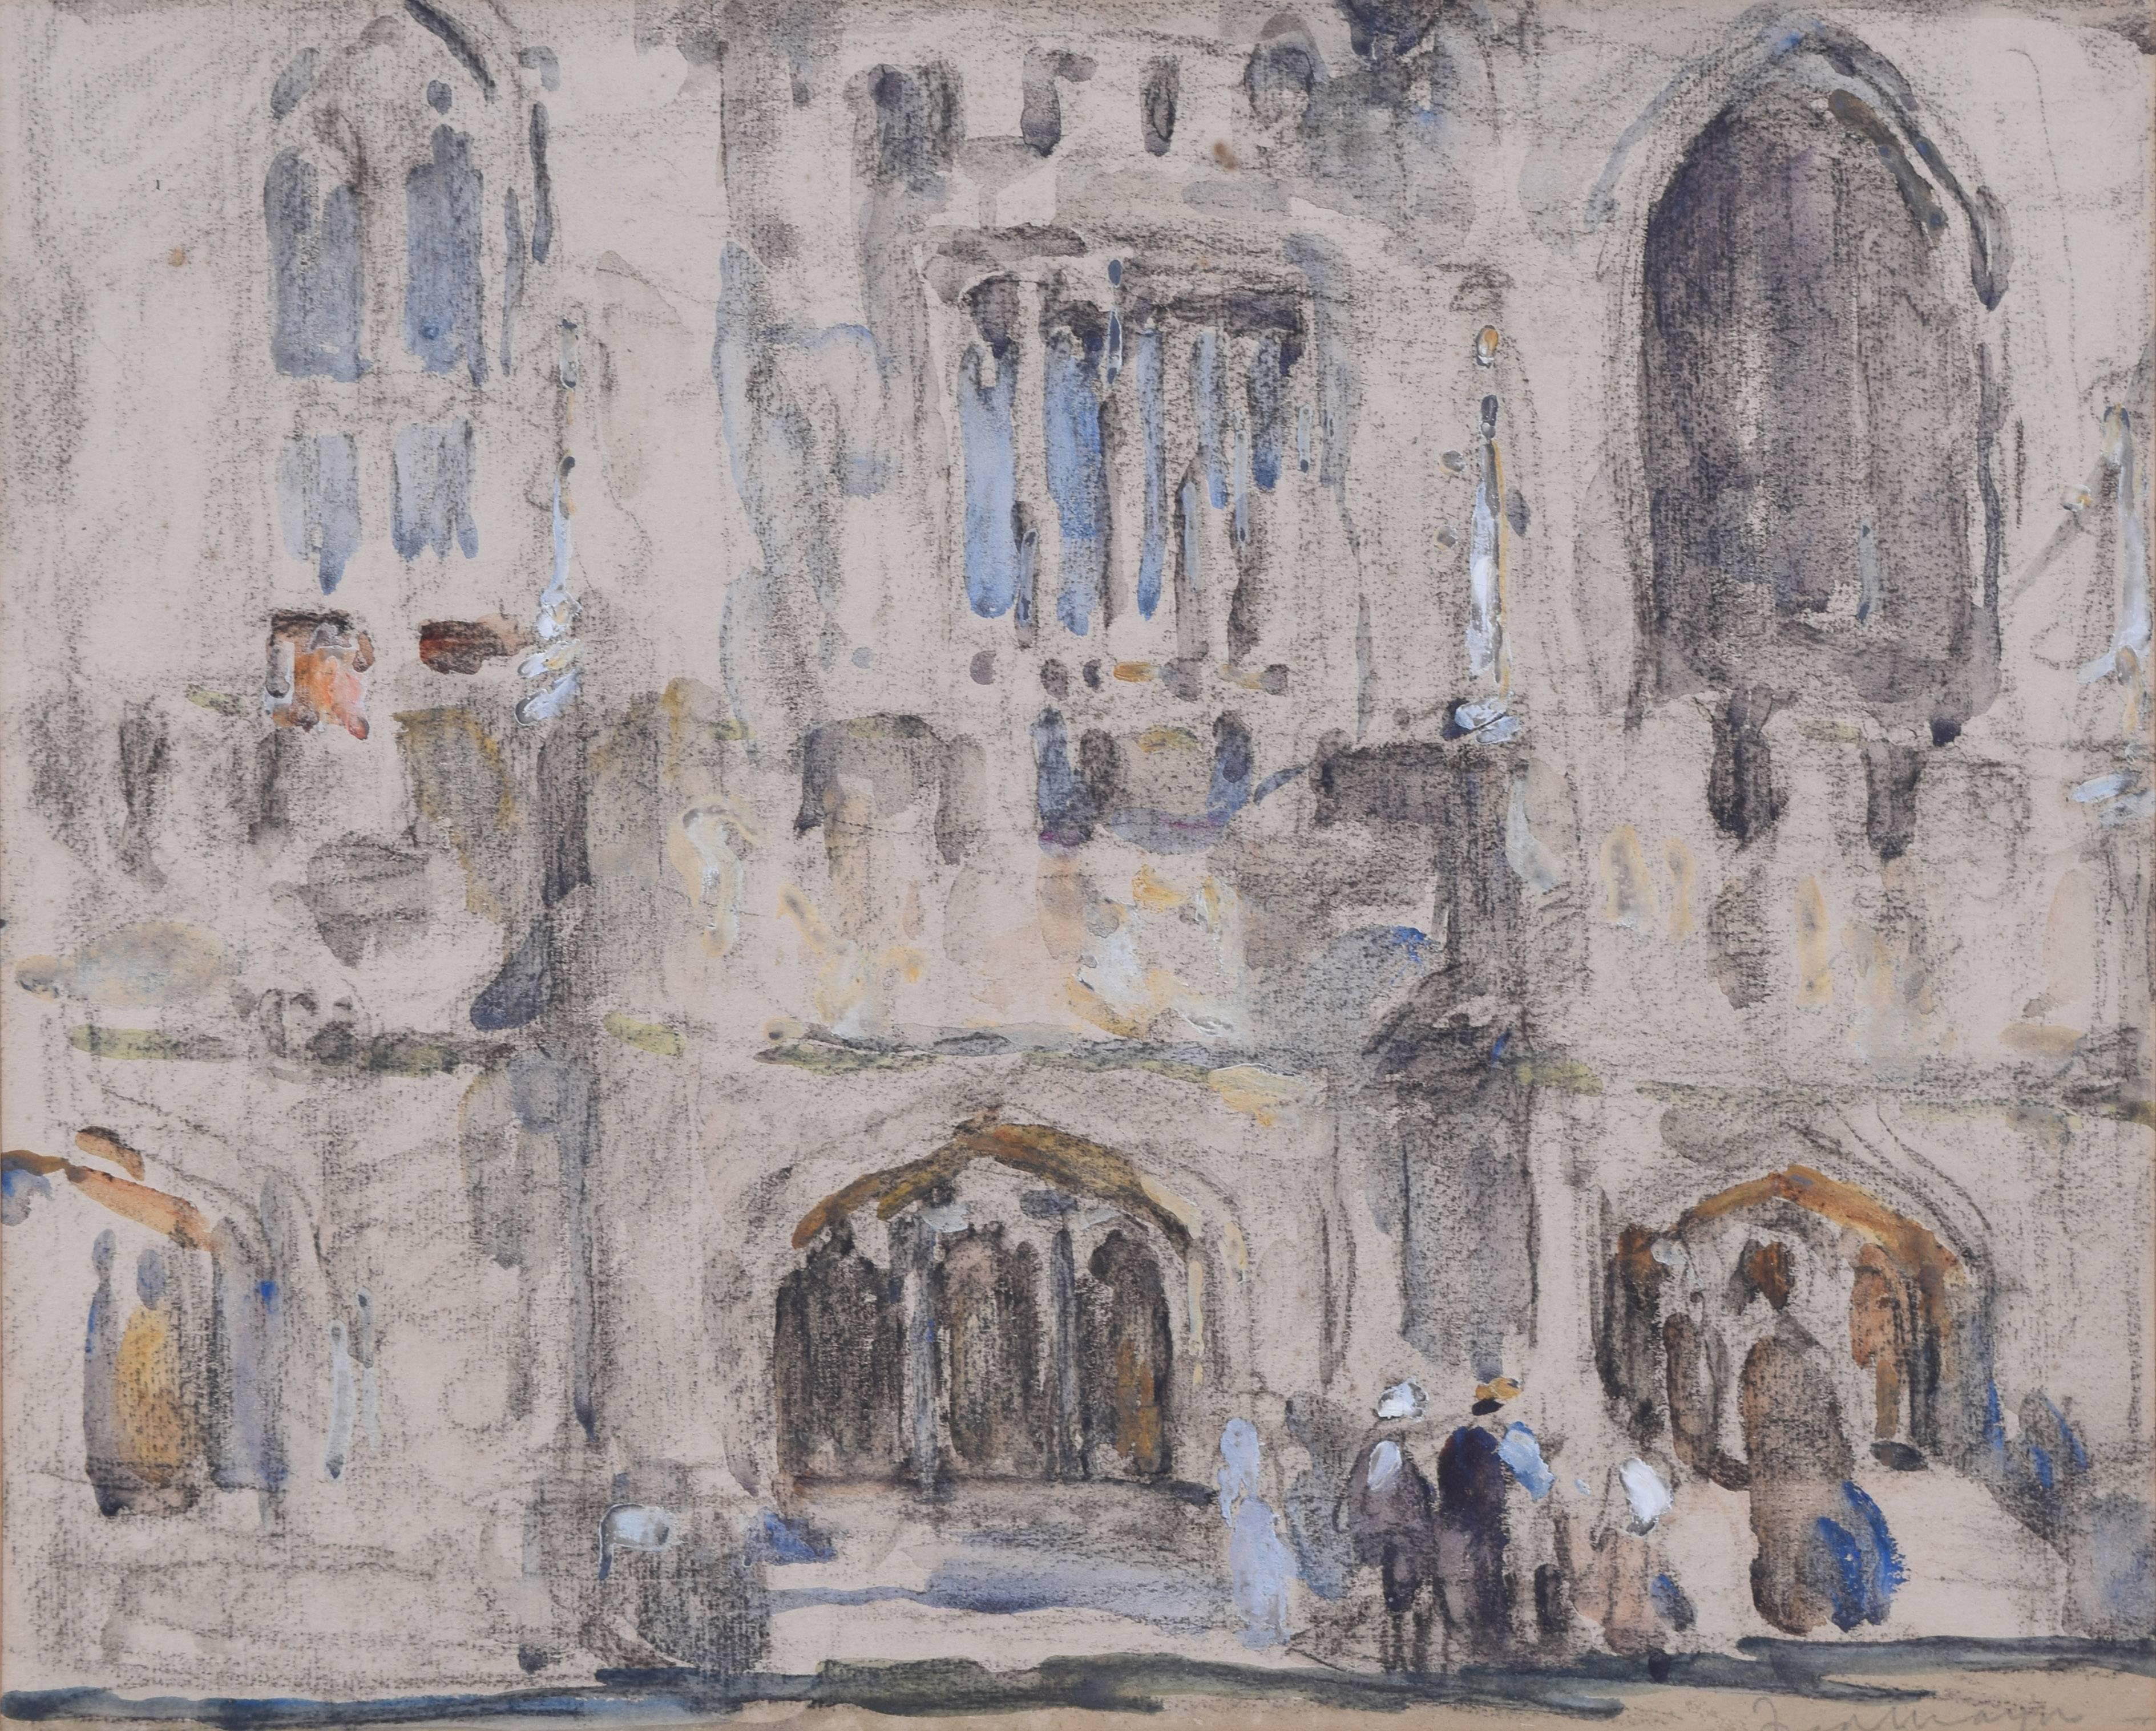 Fred Mayor (britannique, 1865-1916)
Magdalen College, Oxford
Aquarelle et crayon
12x15"

Dans ce tableau, Mayor capture la Madeleine dans son style impressionniste habituel, avec une utilisation efficace d'éclaboussures de couleurs et une